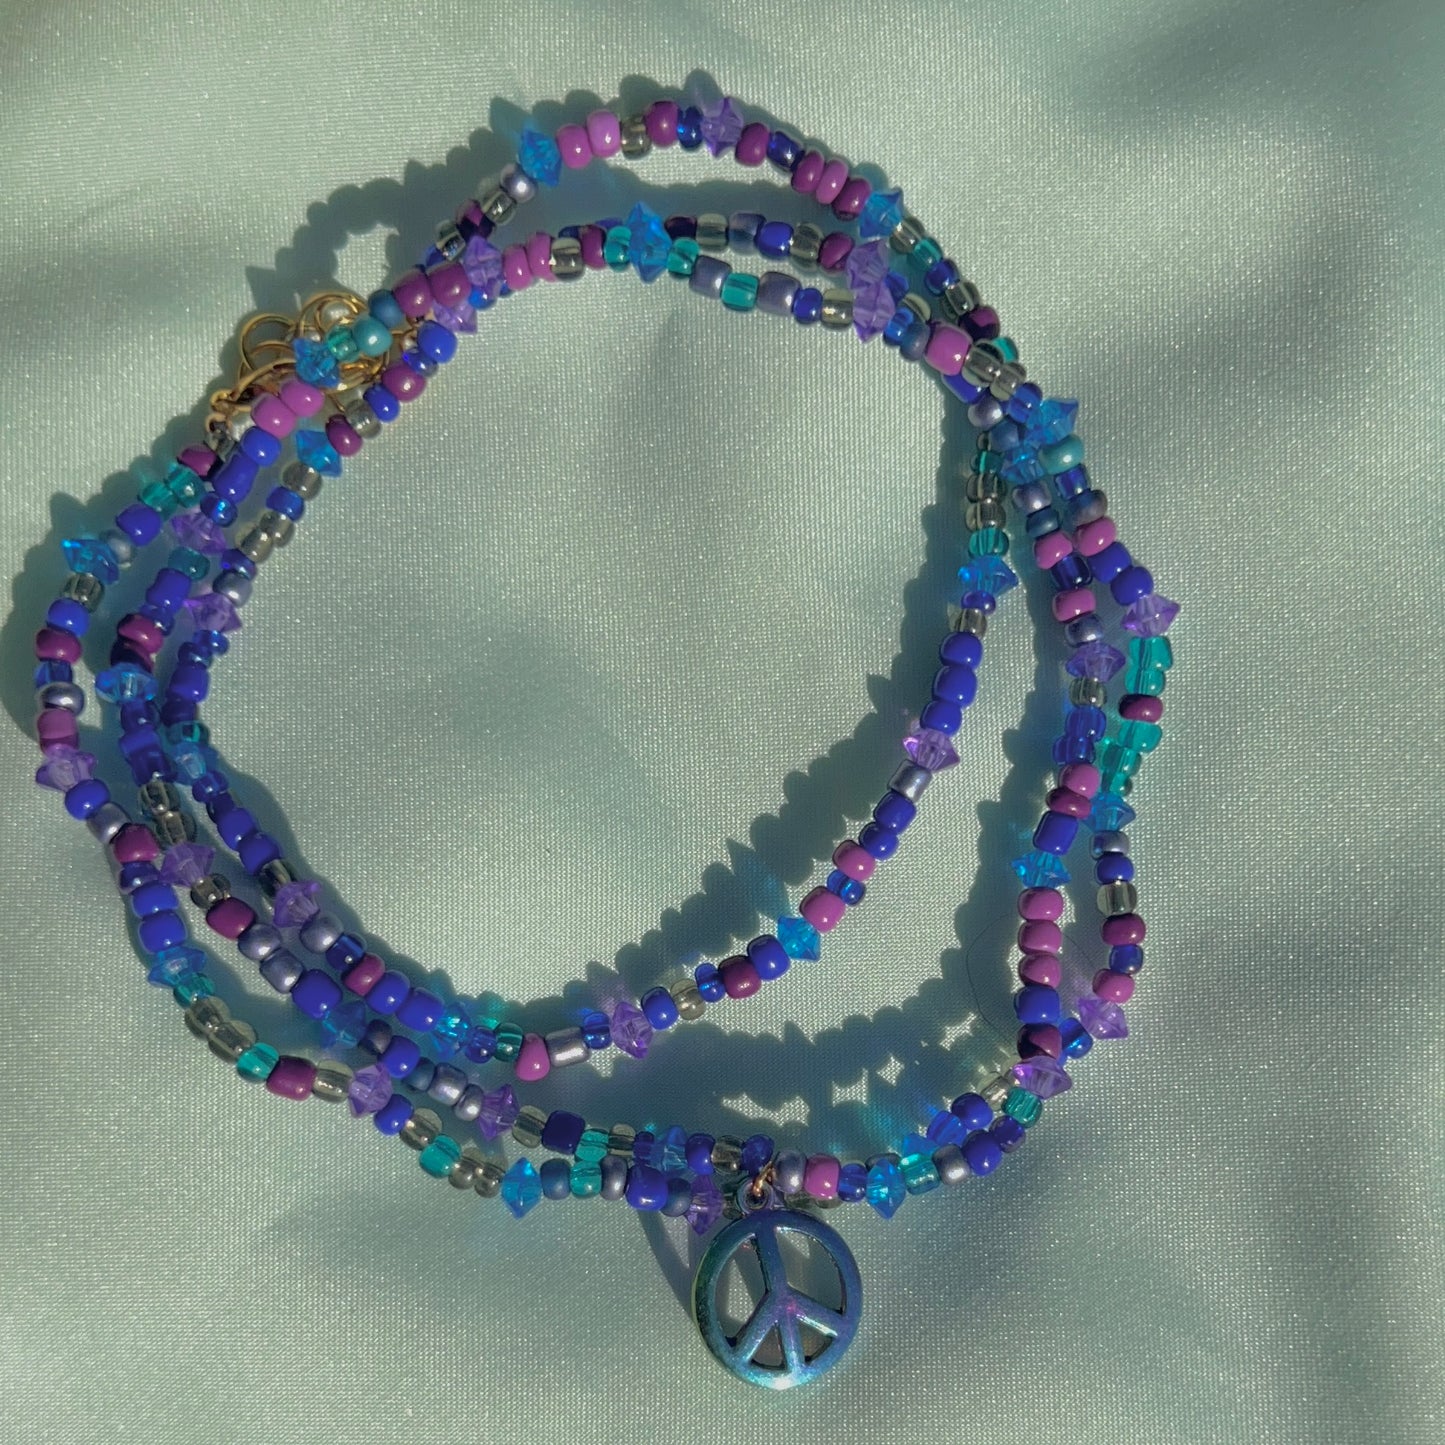 Tranquil Waist Beads